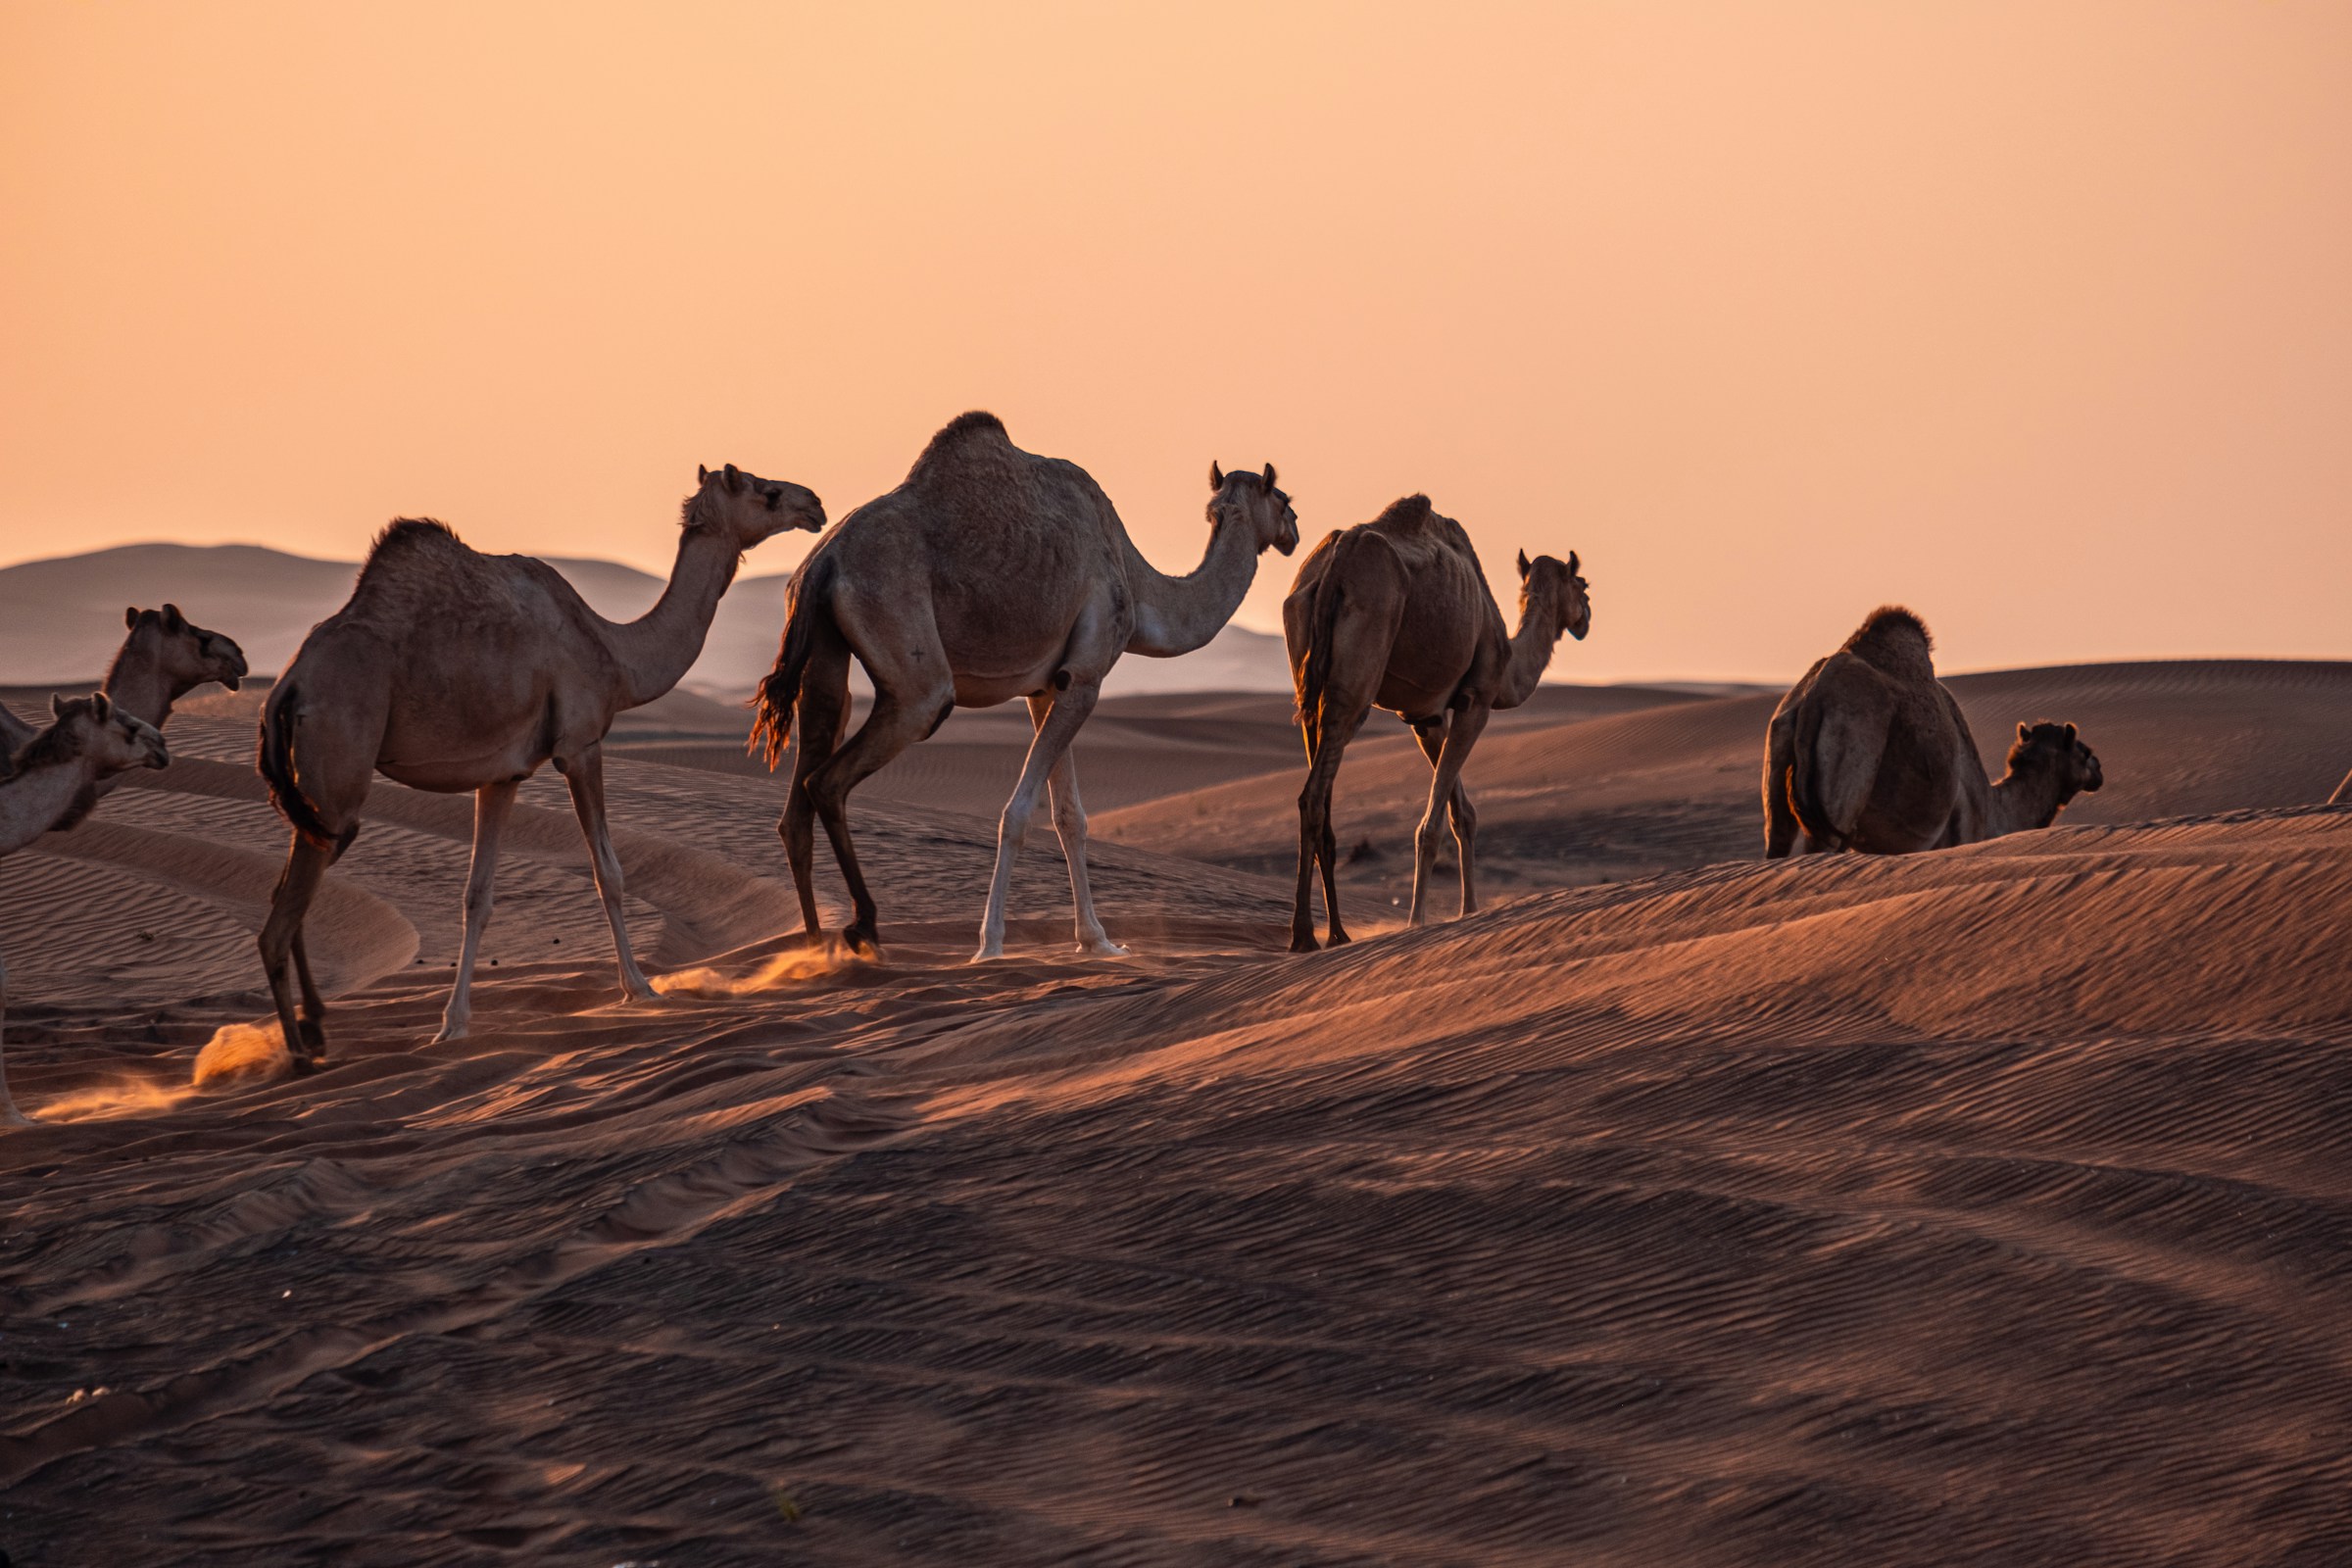 Grupp av kameler som vandrar och vilar på sanddynerna i Förenade Arabemiraten under skymningen med orange himmel i bakgrunden.